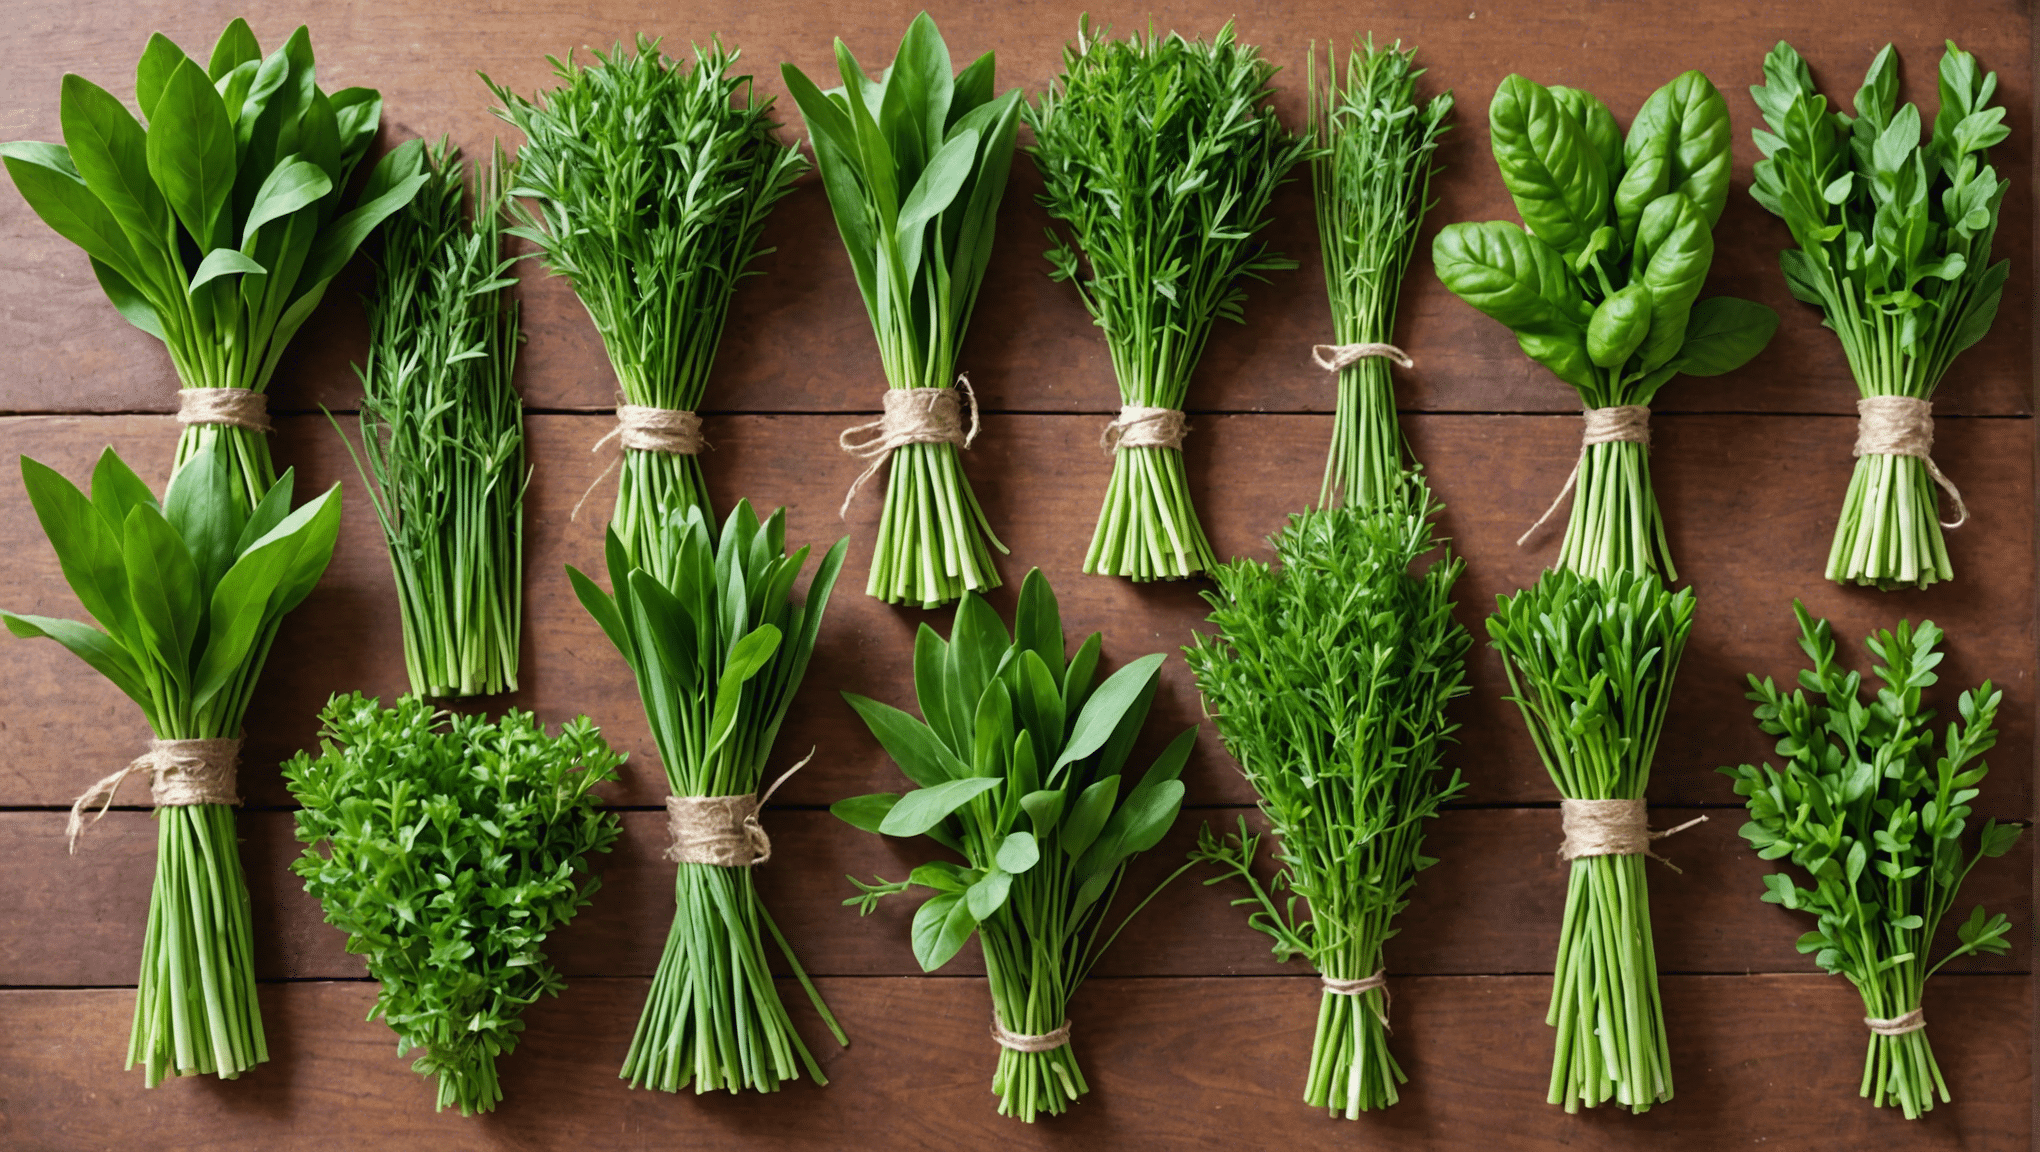 découvrez comment choisir les meilleures herbes fraîches pour sublimer vos plats grâce à nos conseils et astuces culinaires.